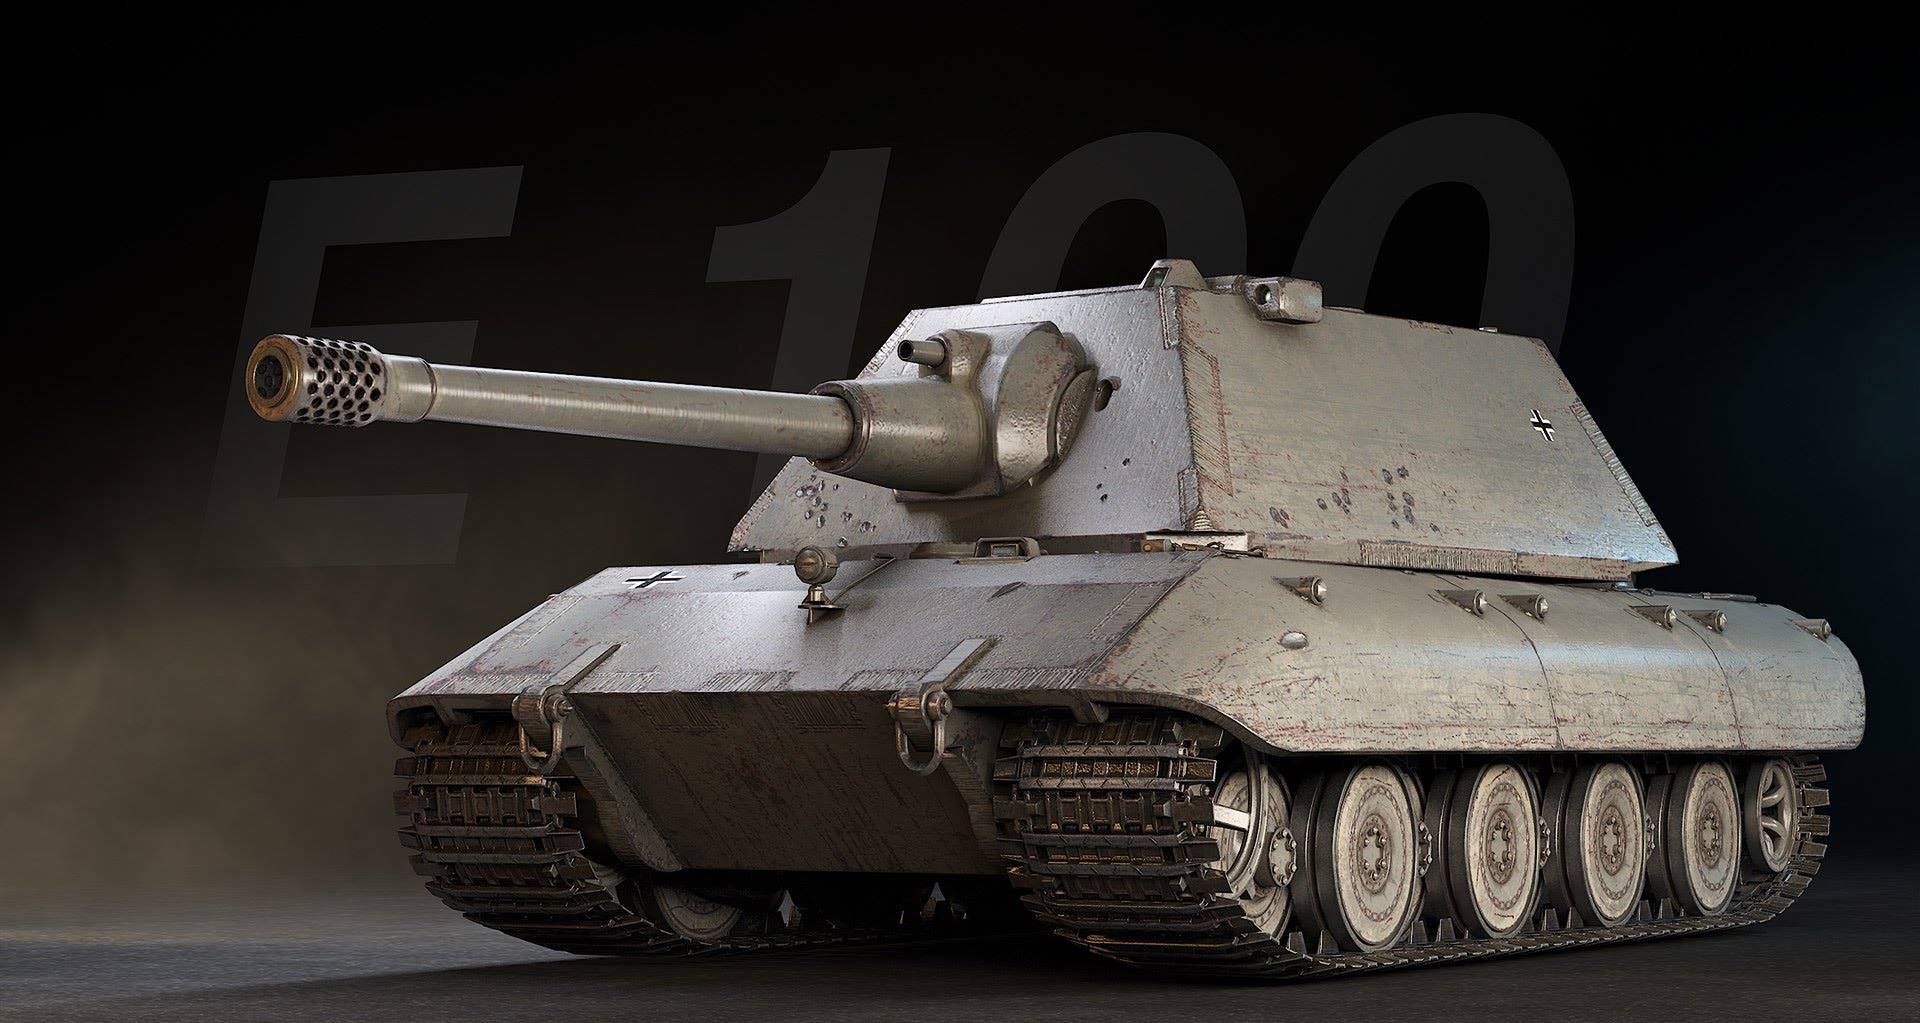 60tp lewandowskiego против е-100: рассказываю и показываю какой танк мощнее и актуальнее в 2021 году